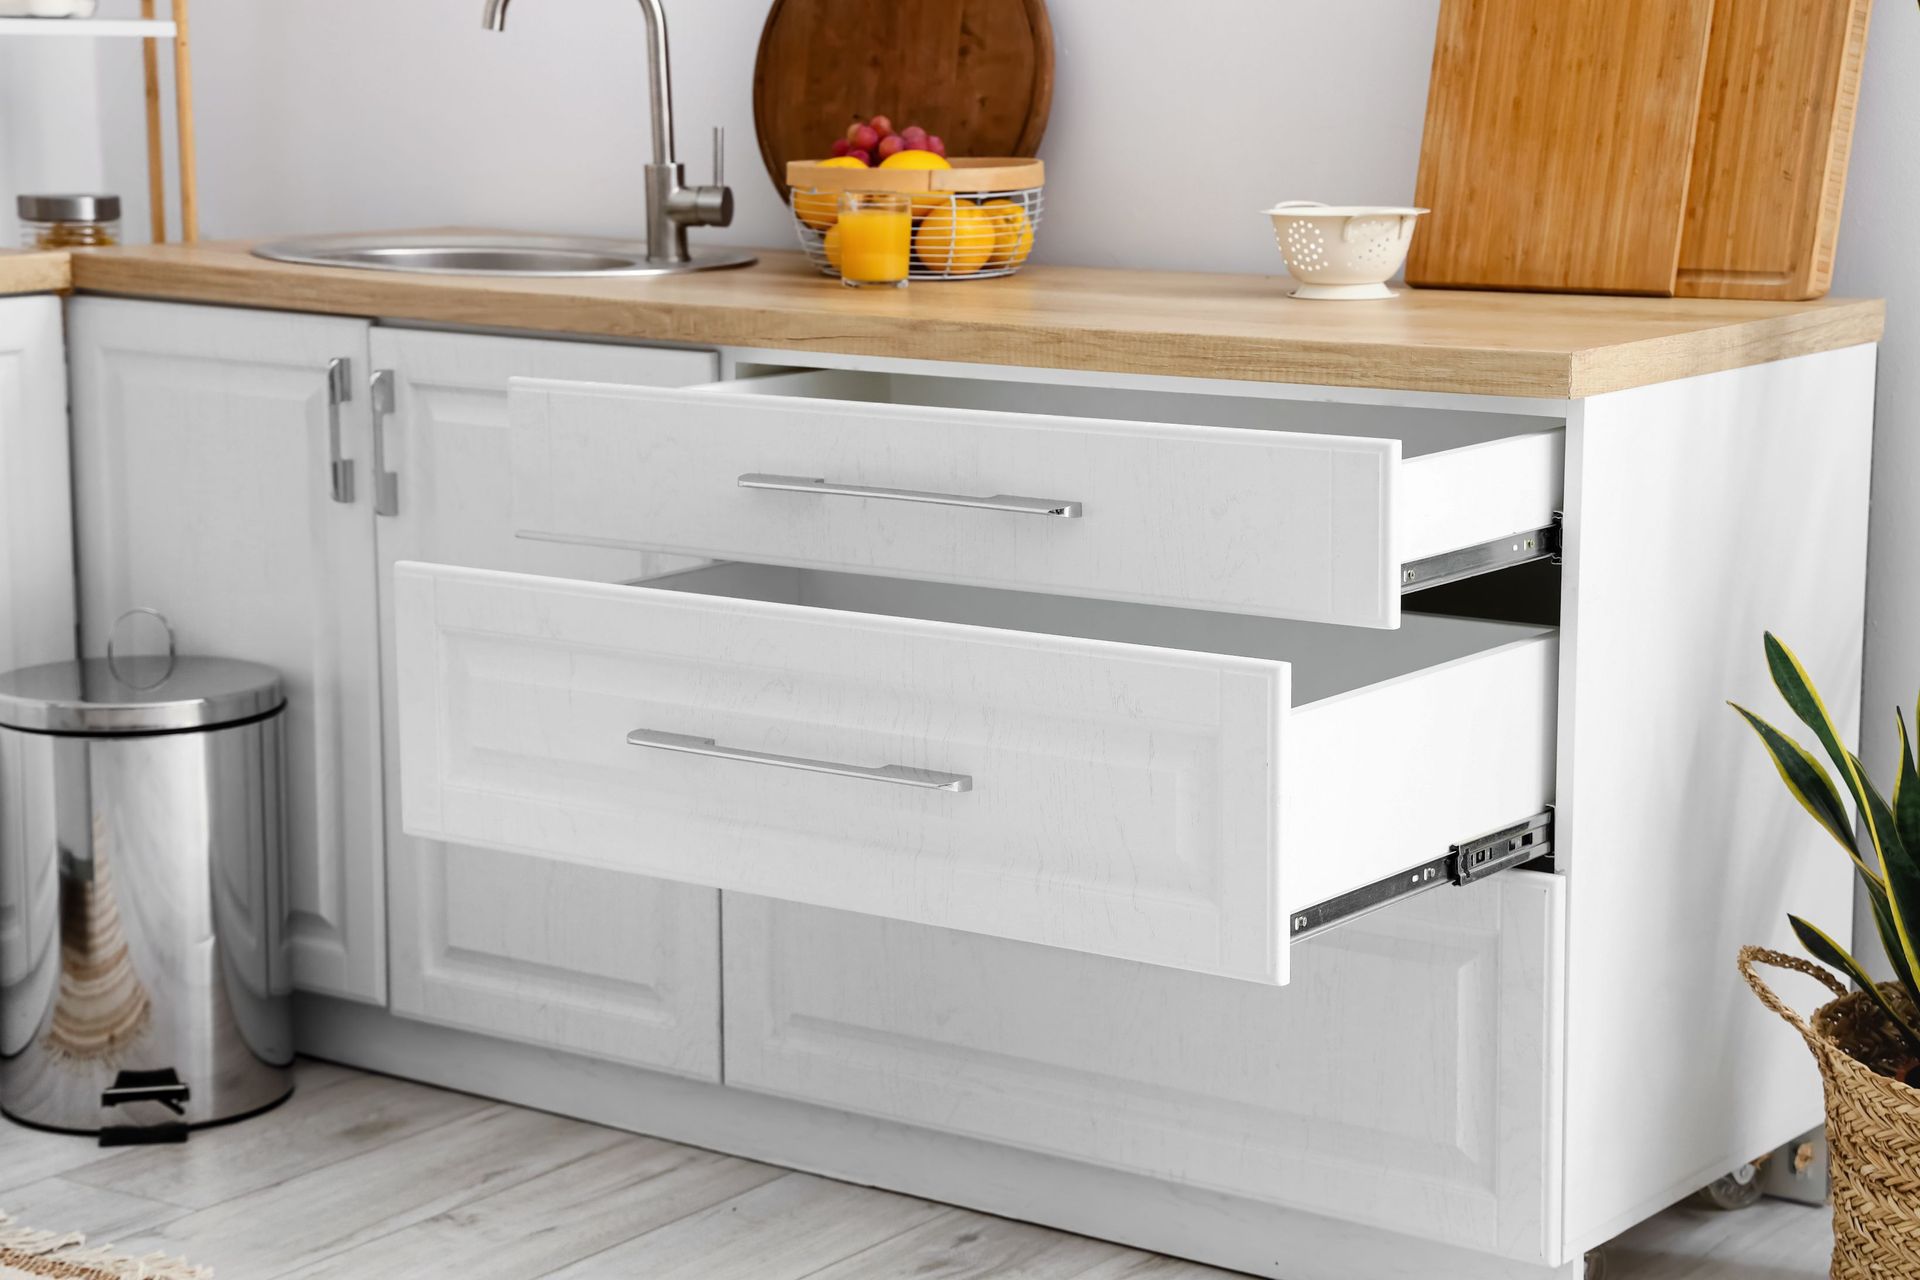 stylish counters opened drawers light kitchen